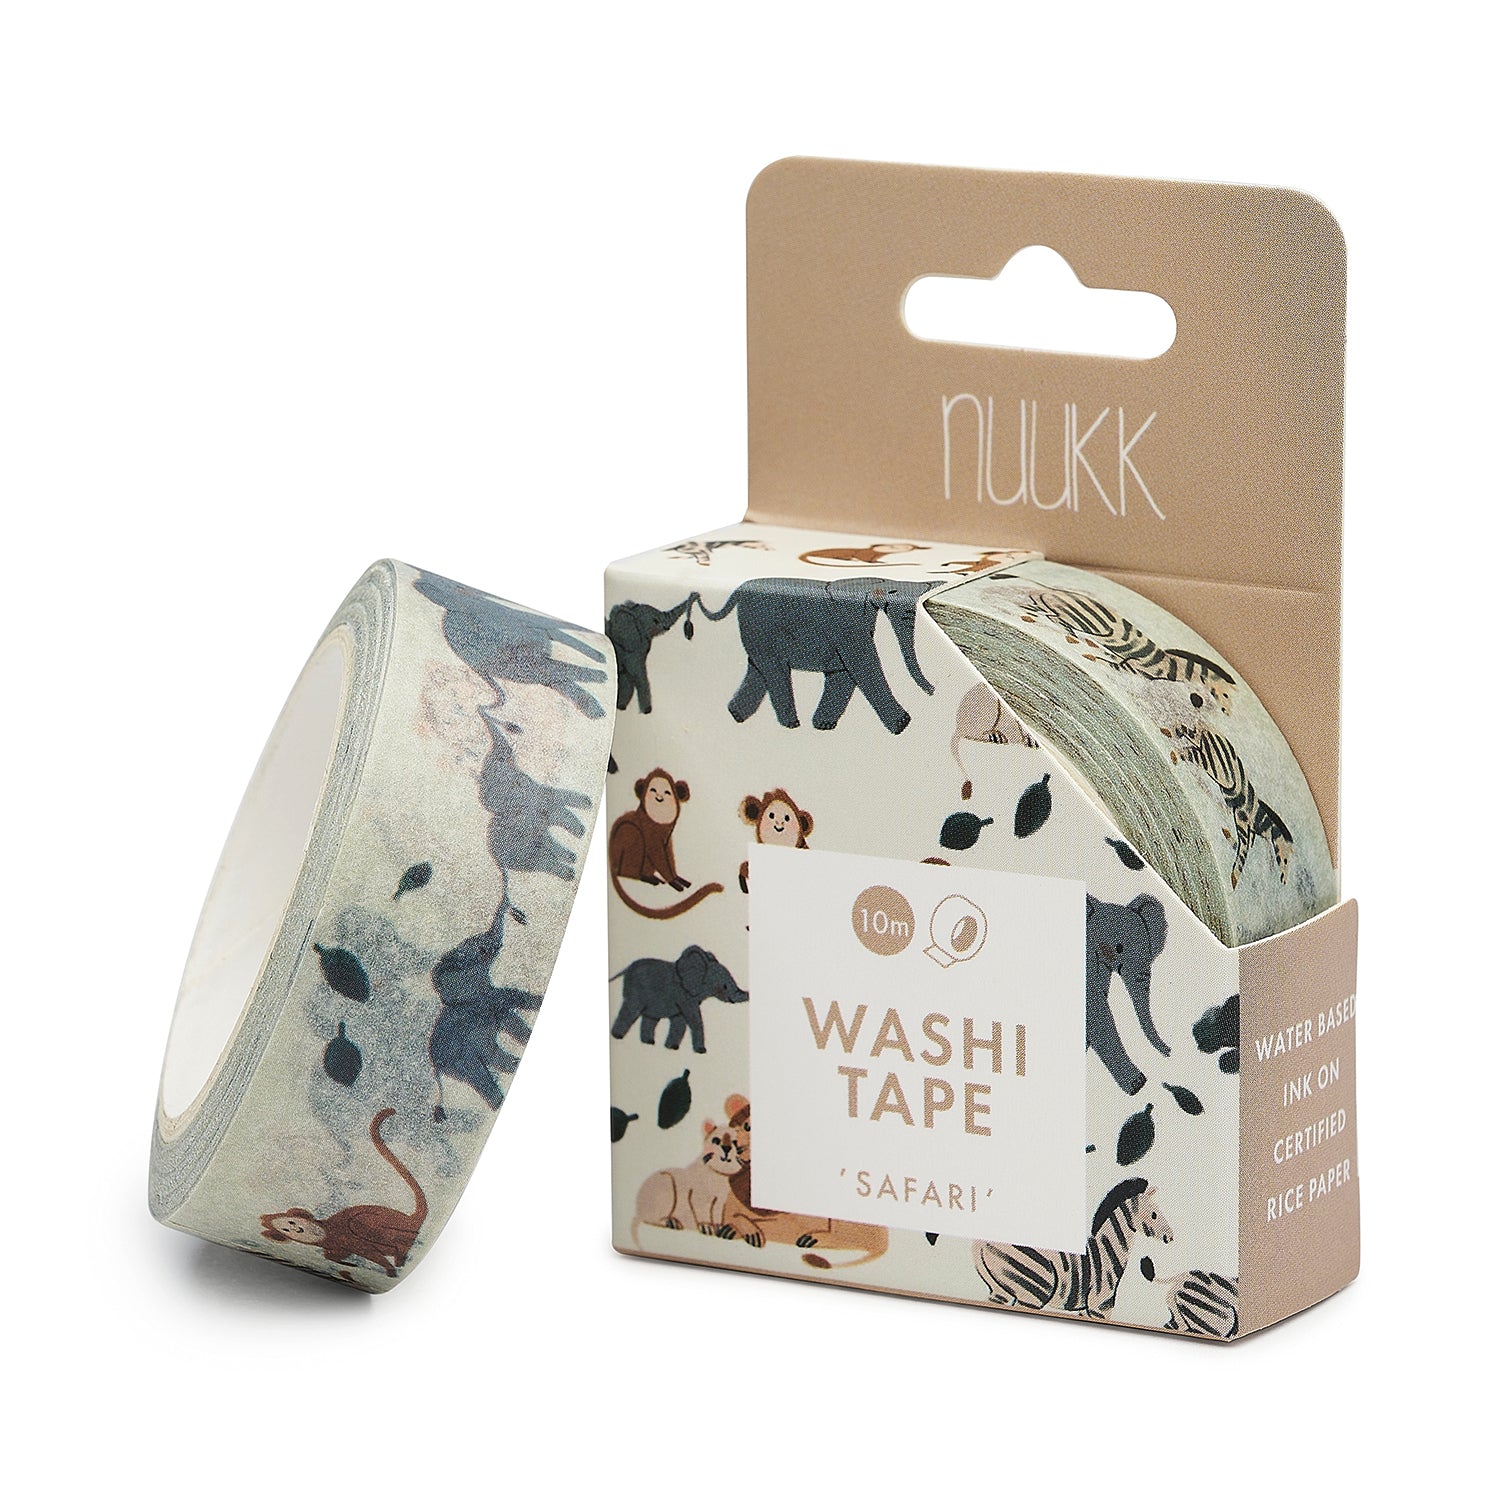 Washi Tape “Safari”